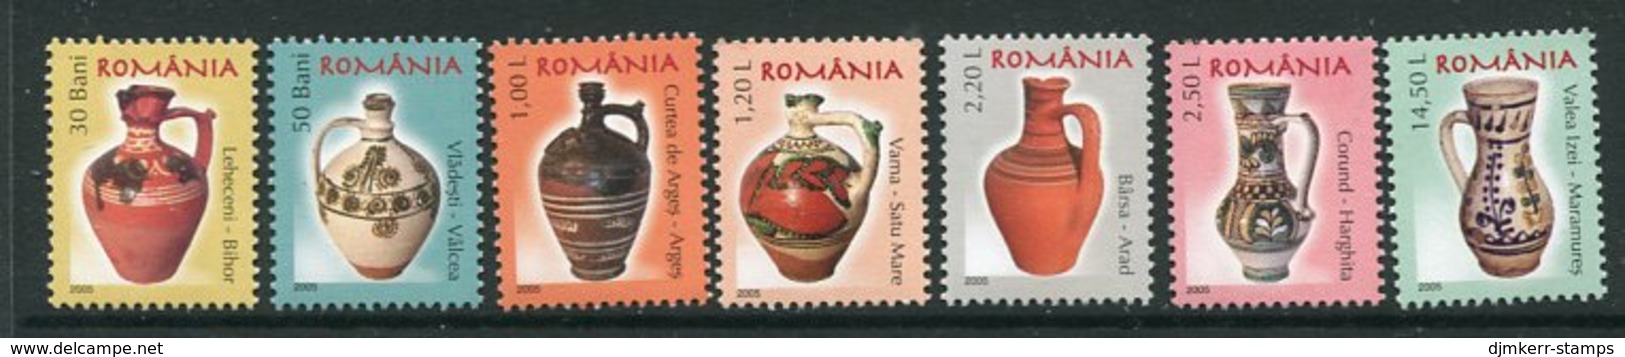 ROMANIA 2005 Ceramics Definitive (7) MNH / **.  Michel 6006-12 - Unused Stamps